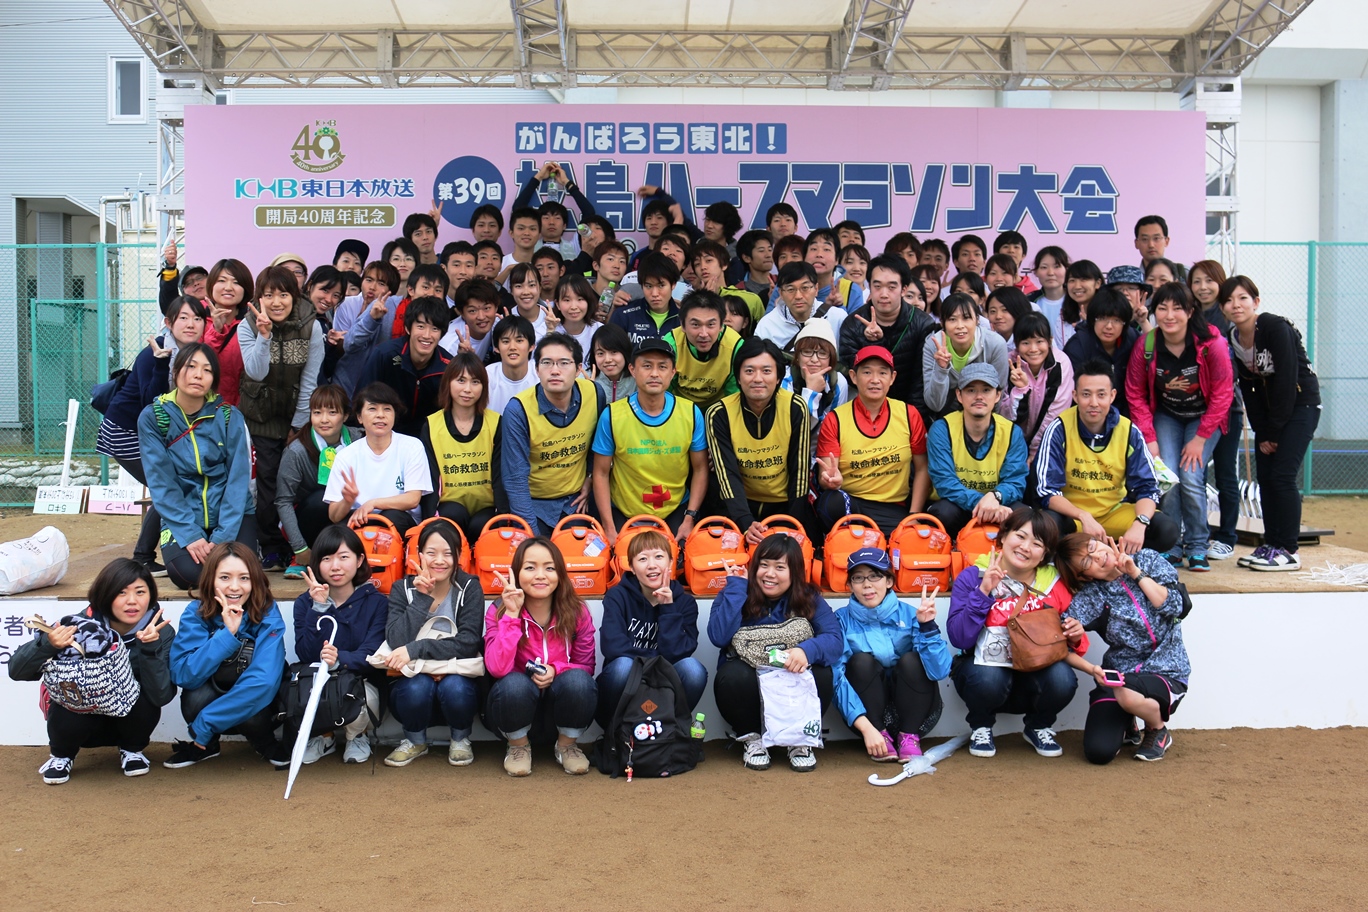 20151011松島マラソン集合写真(752KB)